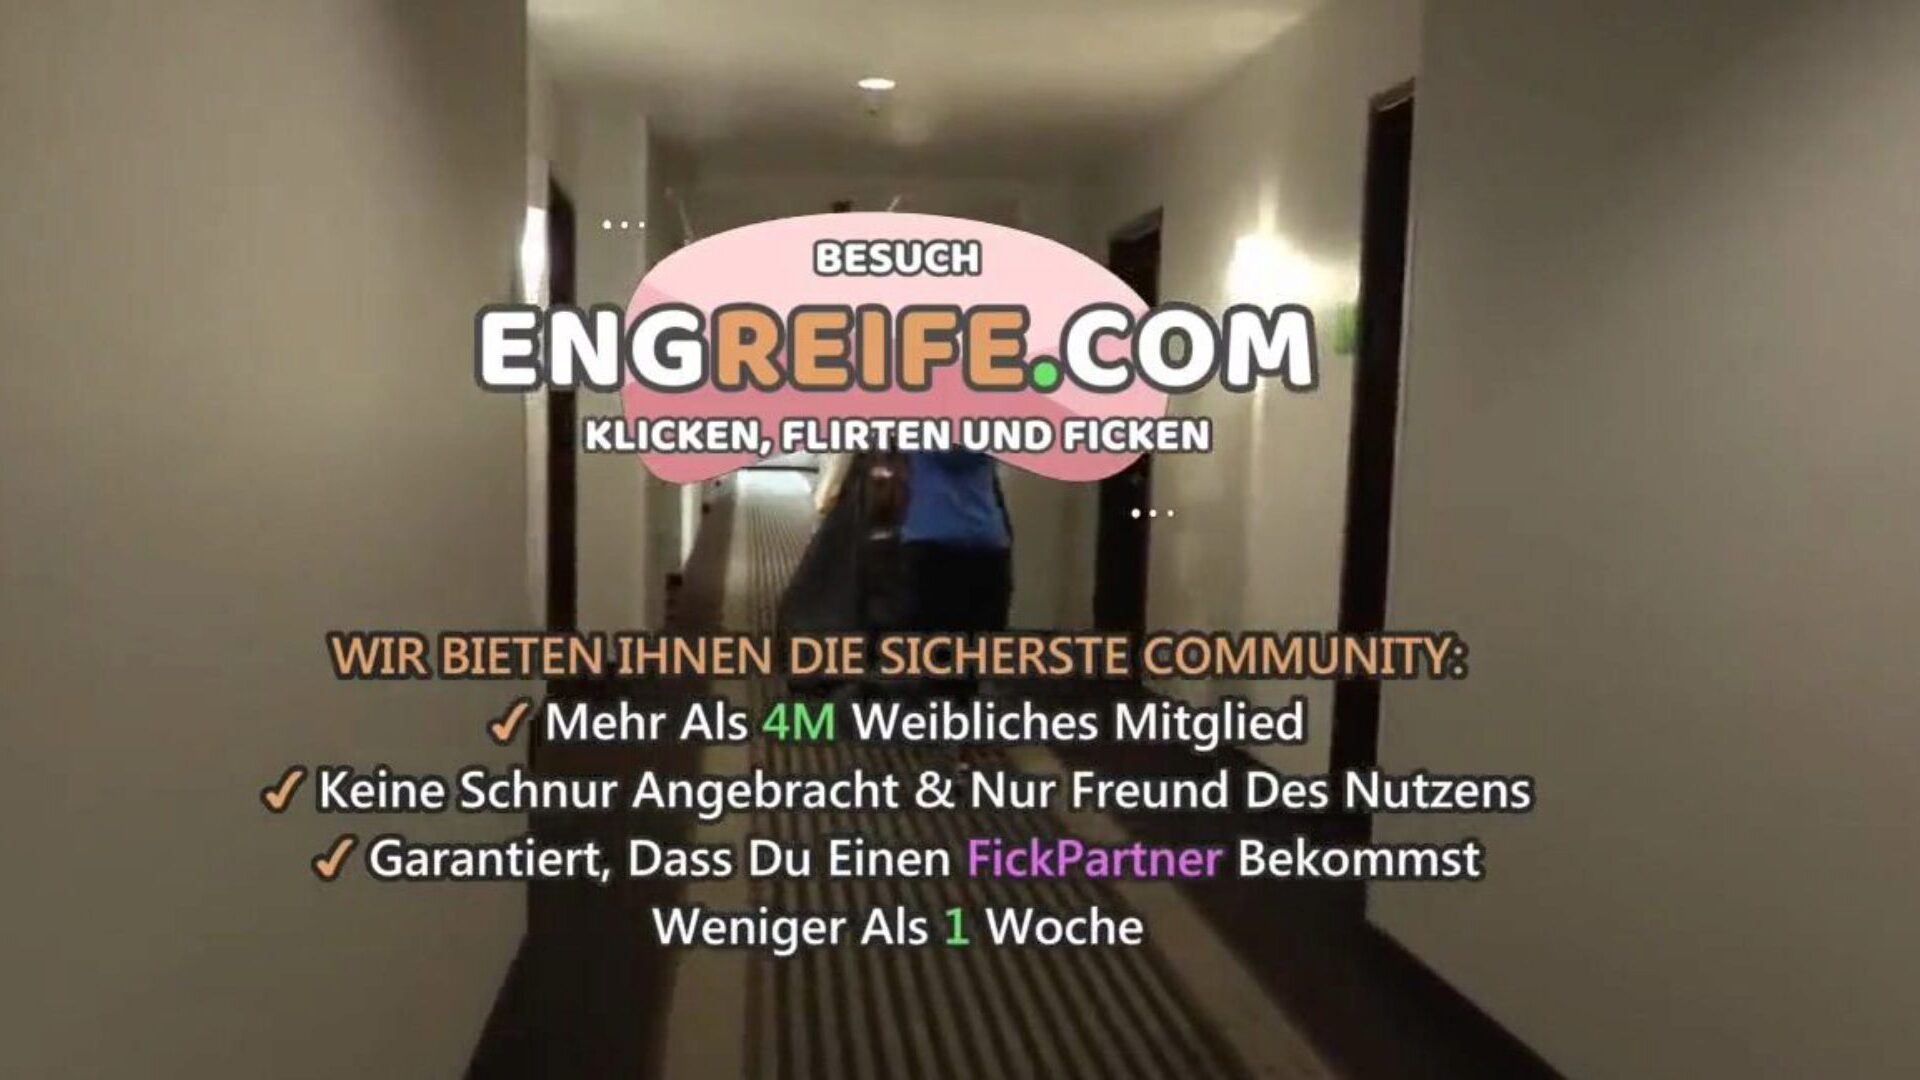 hotelreinigungs-palvelu vom gast verfuhrt: ilmainen hd-porno 3a katsella hotelreinigungs-palvelu vom gast verfuhrt -leike xhamsterissa - perimmäinen valinta ilmaisista saksalaisista saksalaisista amatööri HD -ydin pornoputkivideoista